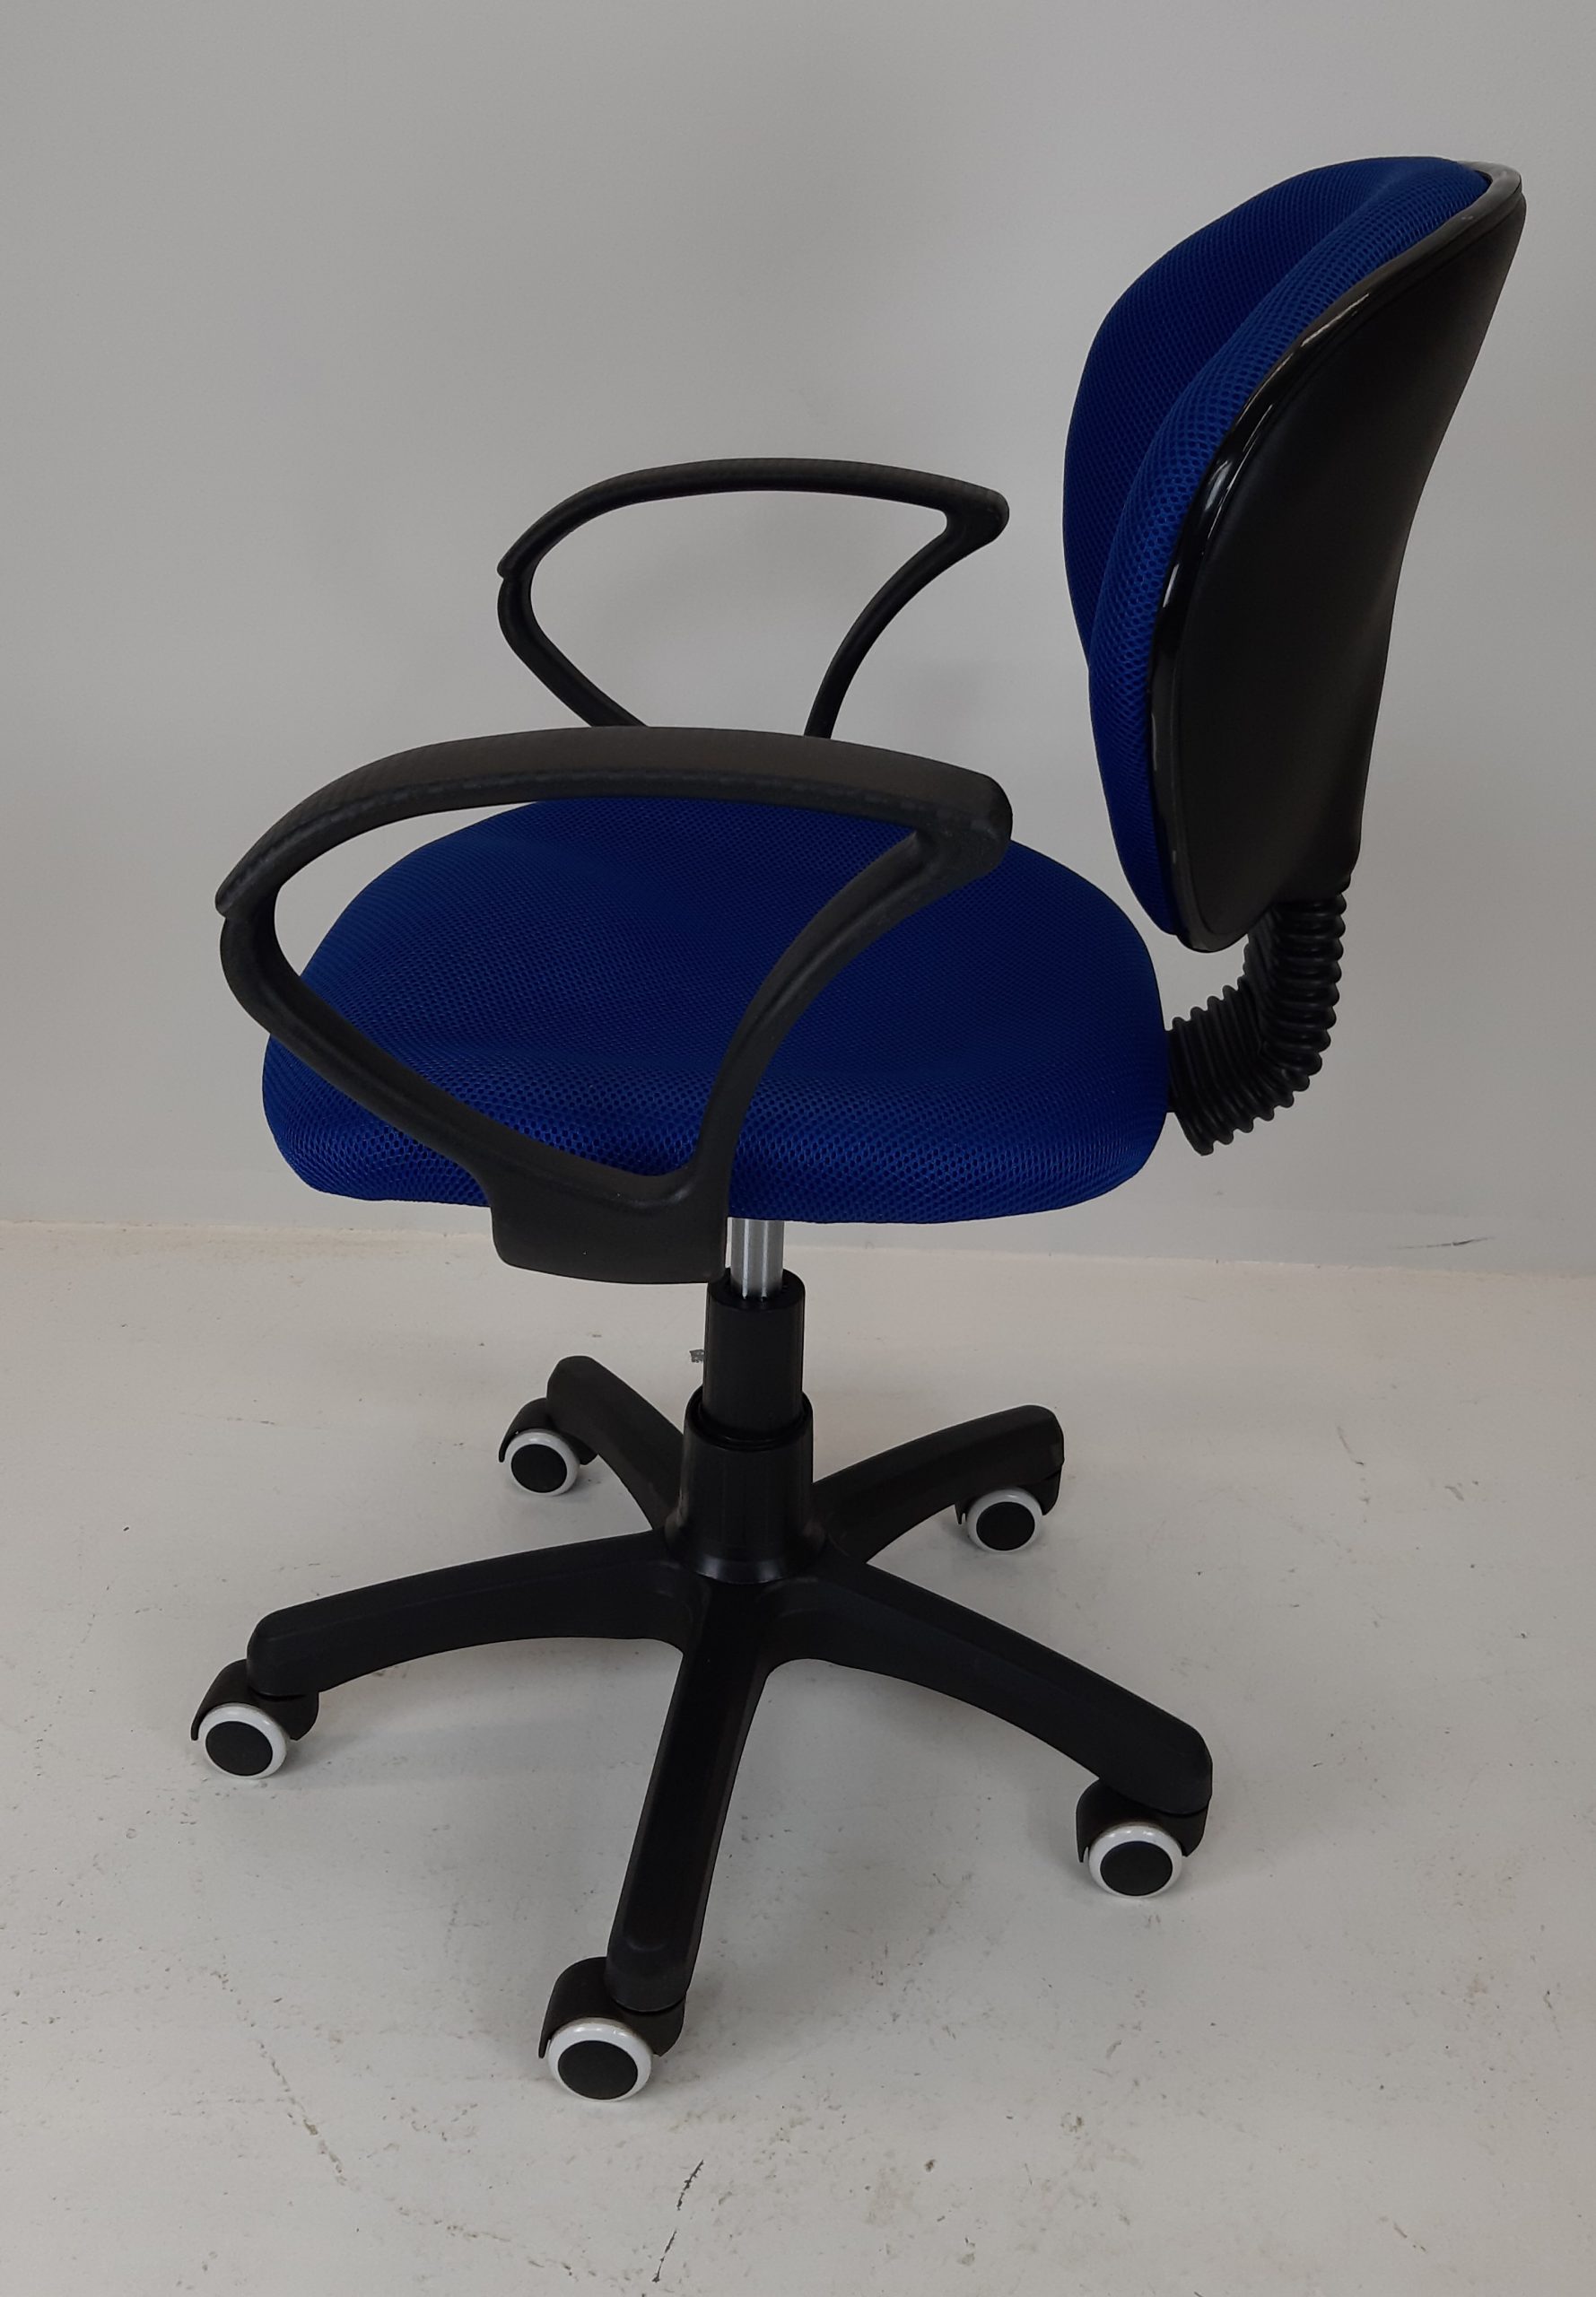 Biroja krēsls "C16-3"